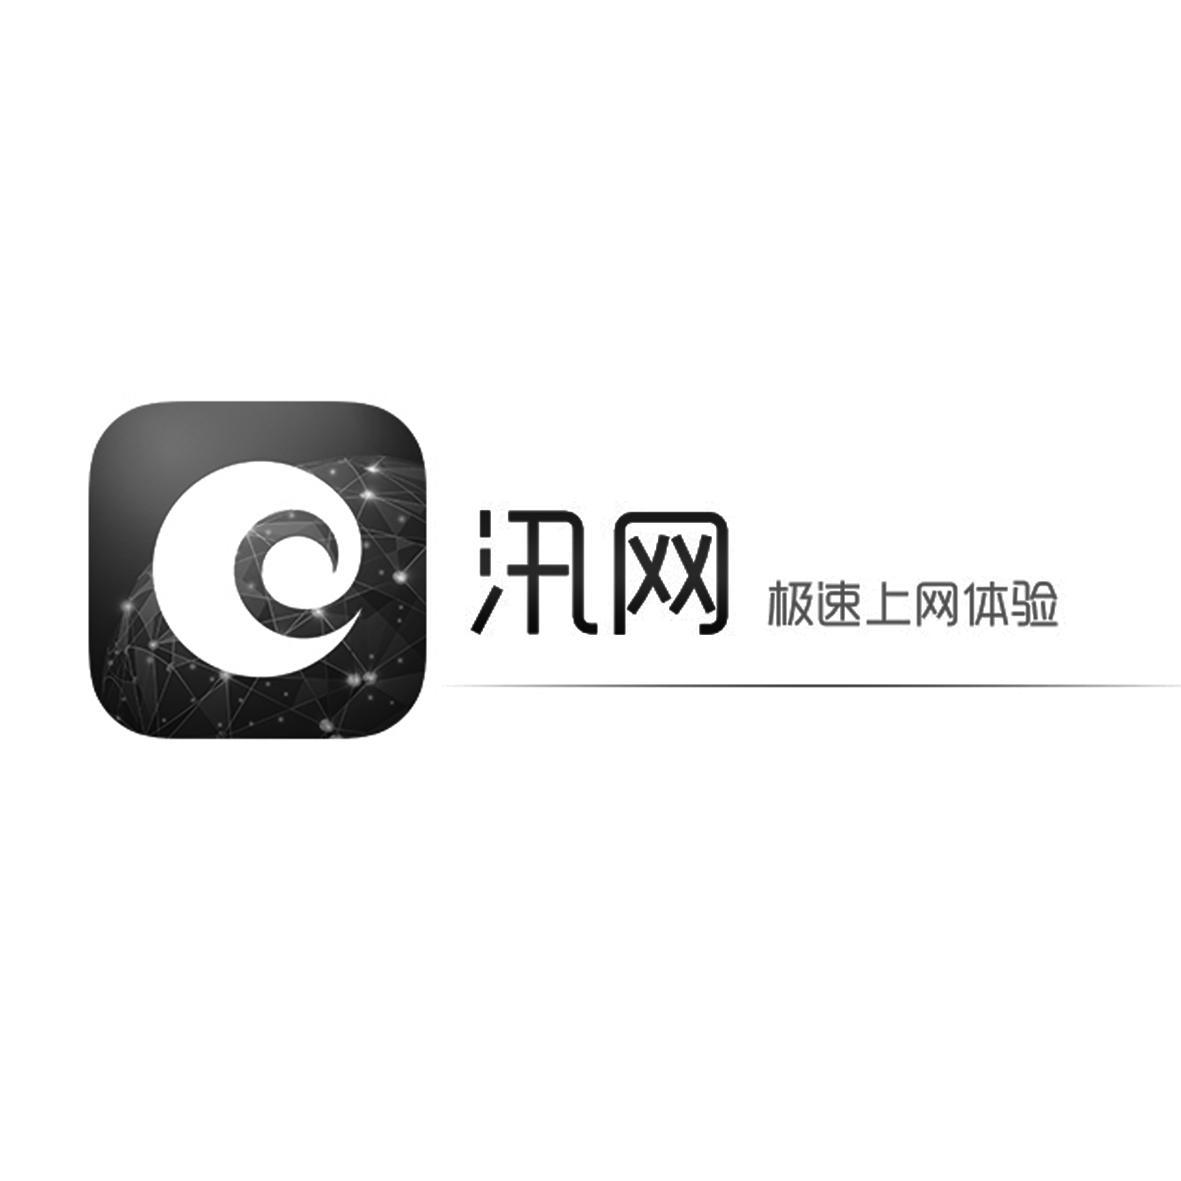 藍汛-CCIH-北京藍汛通信技術有限責任公司